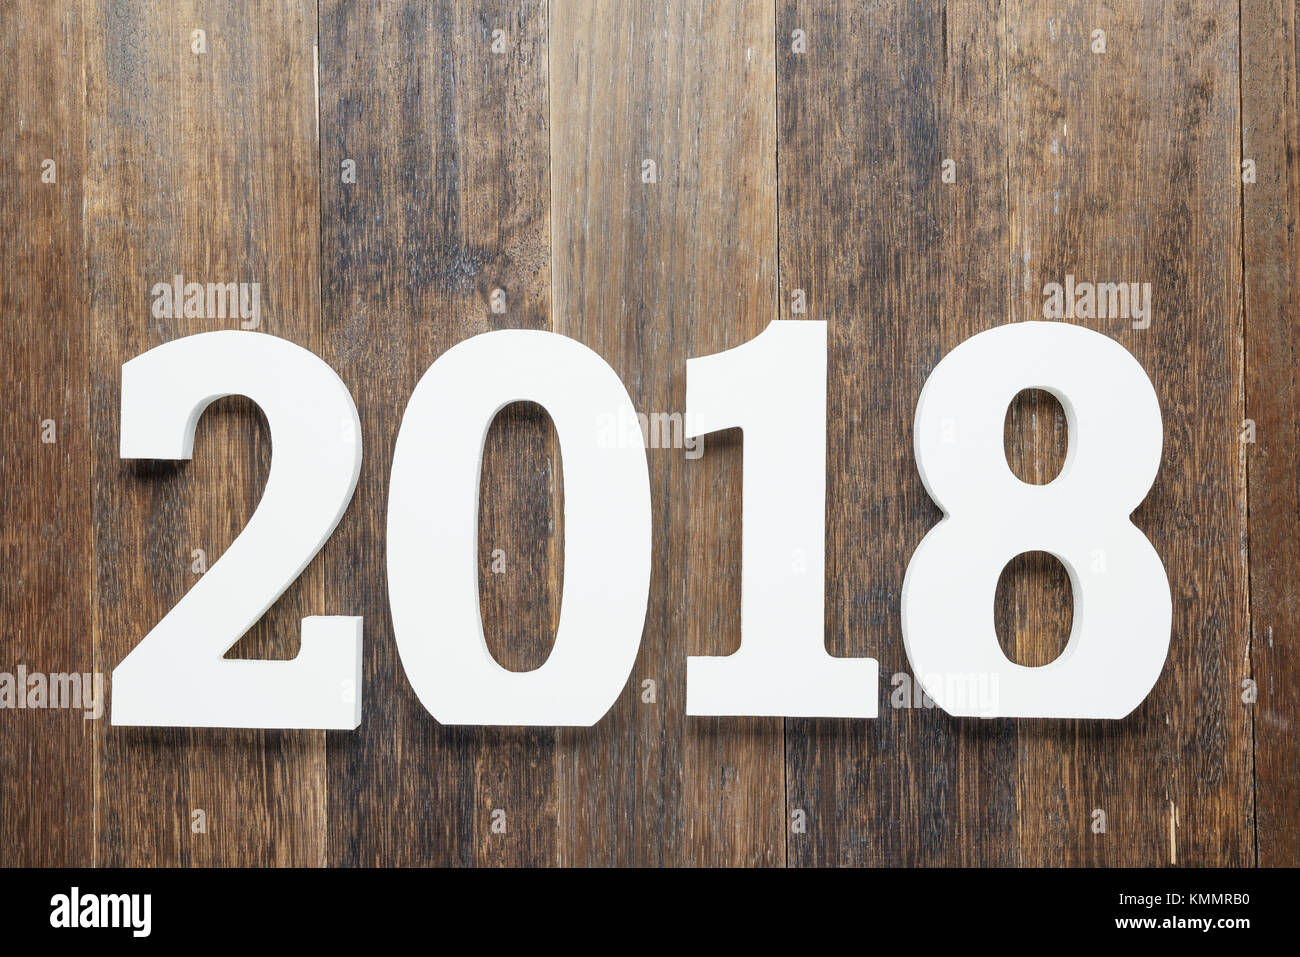 In legno e verniciati con colore bianco cifre 2018 su rustiche in legno ruvido background come concetto di anno nuovo e di natale.vista dall'alto. Foto Stock